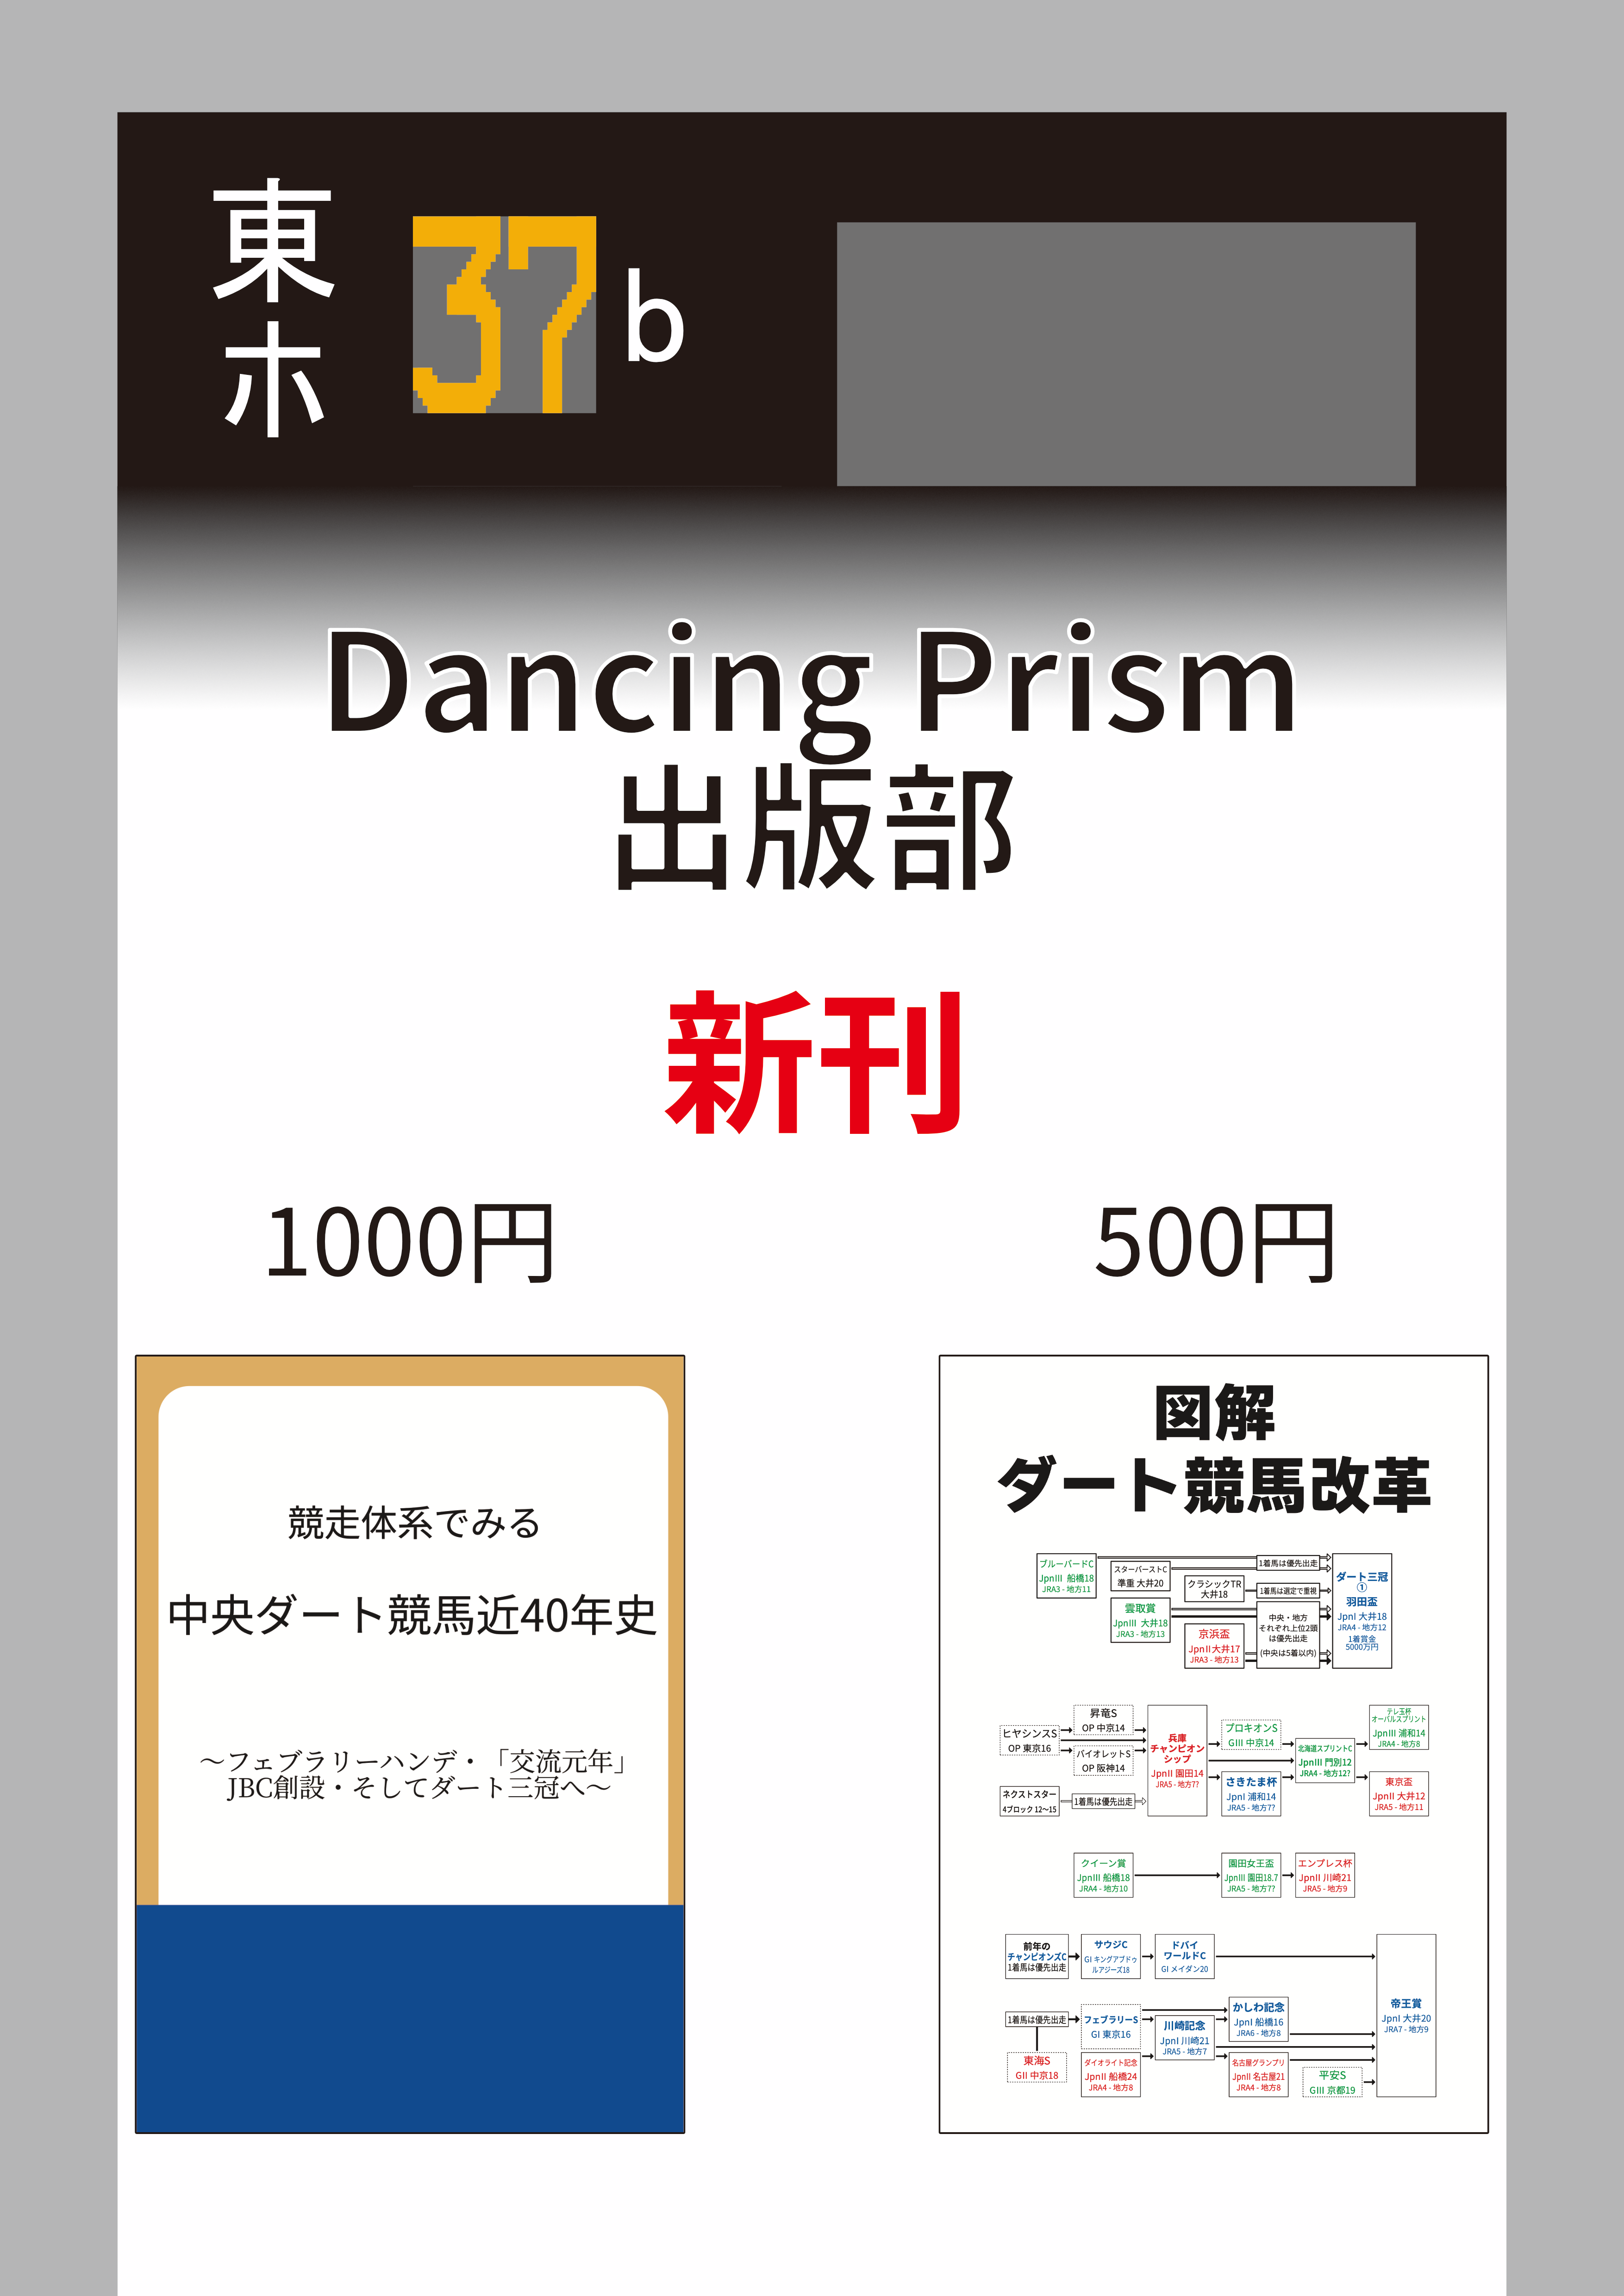 12/31(日) 東ホ37b Dancing Prism出版部